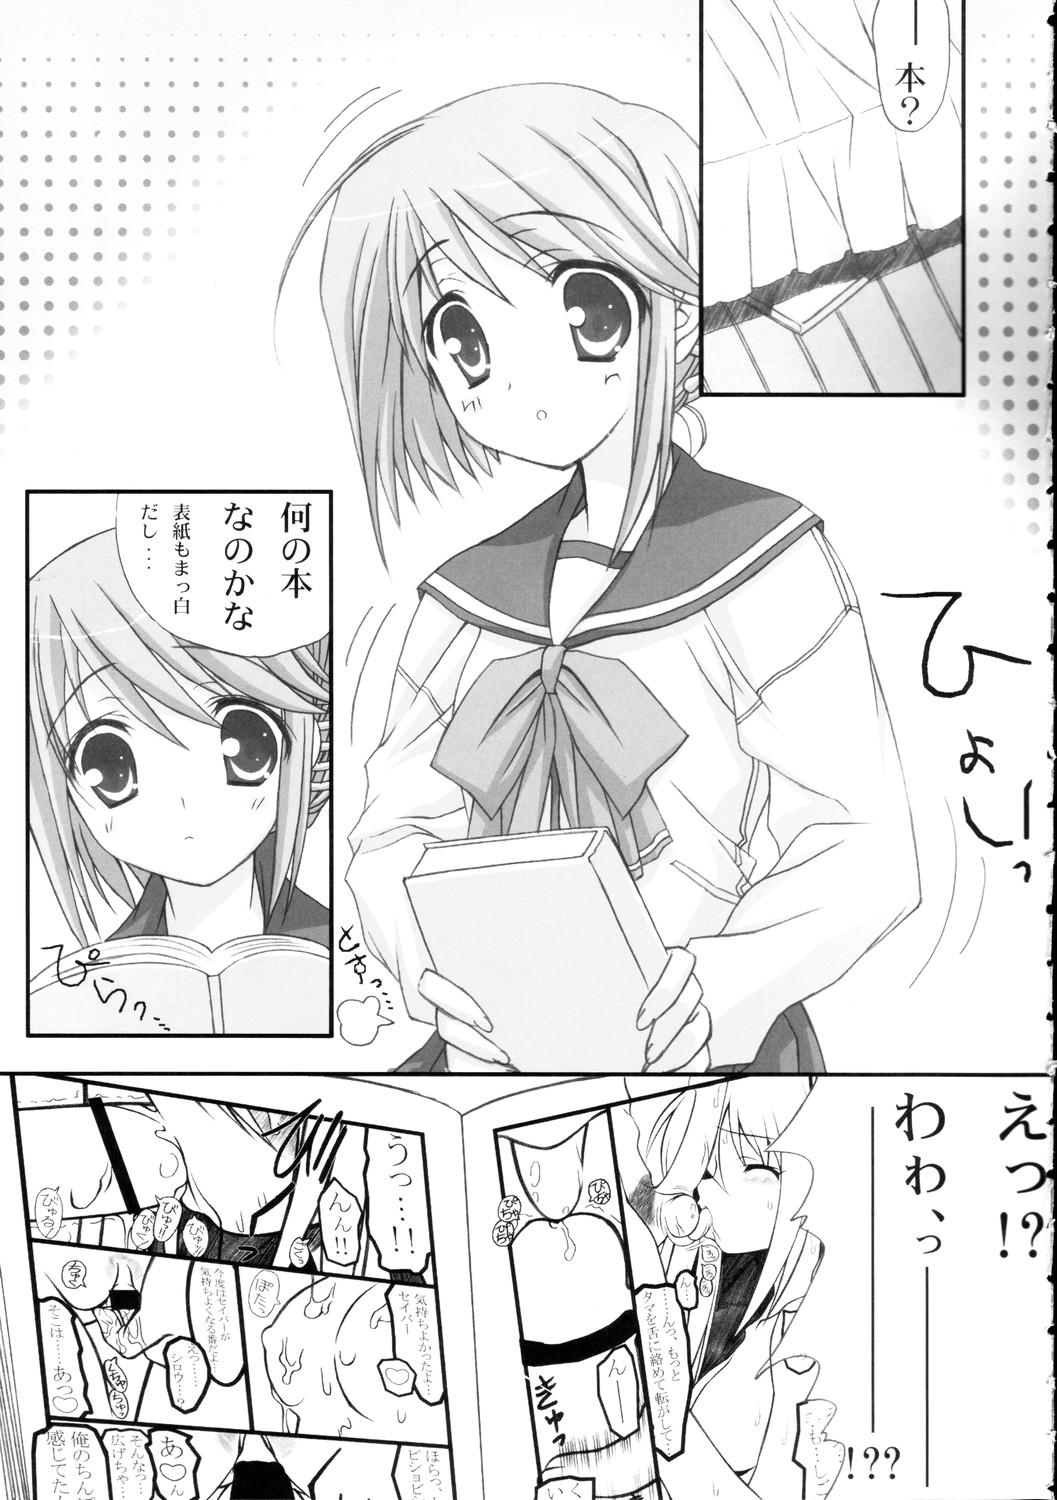 Heels Himitsu no Hako - Toheart2 Mom - Page 6